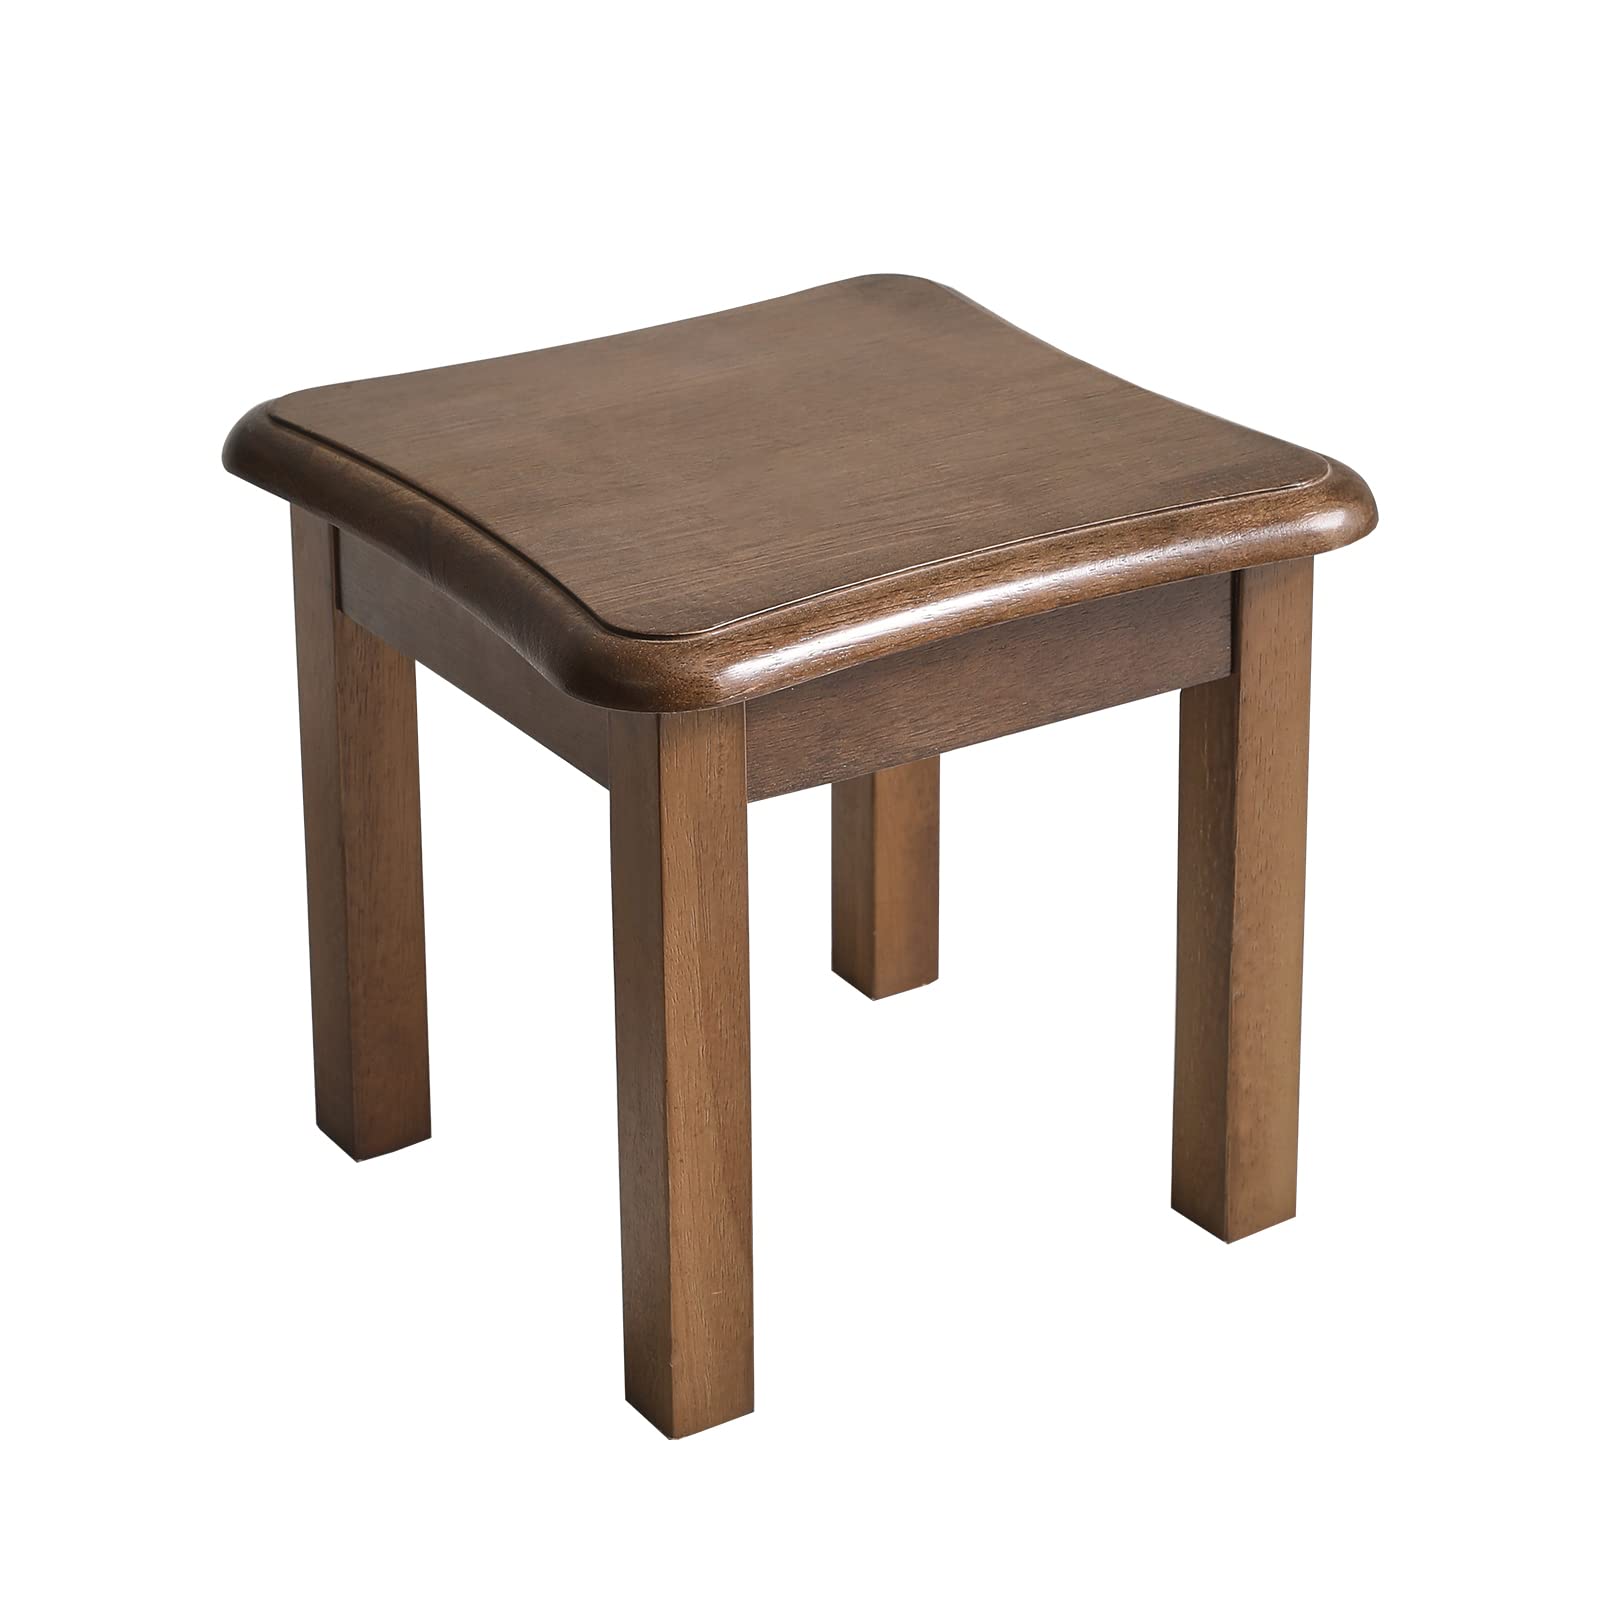 Aibiju 木製 スツール 踏み台 低い椅子 ミニスツール ミニテーブル 小さい 腰掛け 天然木いす 29x29x27cm 無垢木材 ウッドスツール 足置き 客間/リビングルーム/玄関/ベッドルーム適用 耐荷重150kg ダークブラウン JPRF-1353